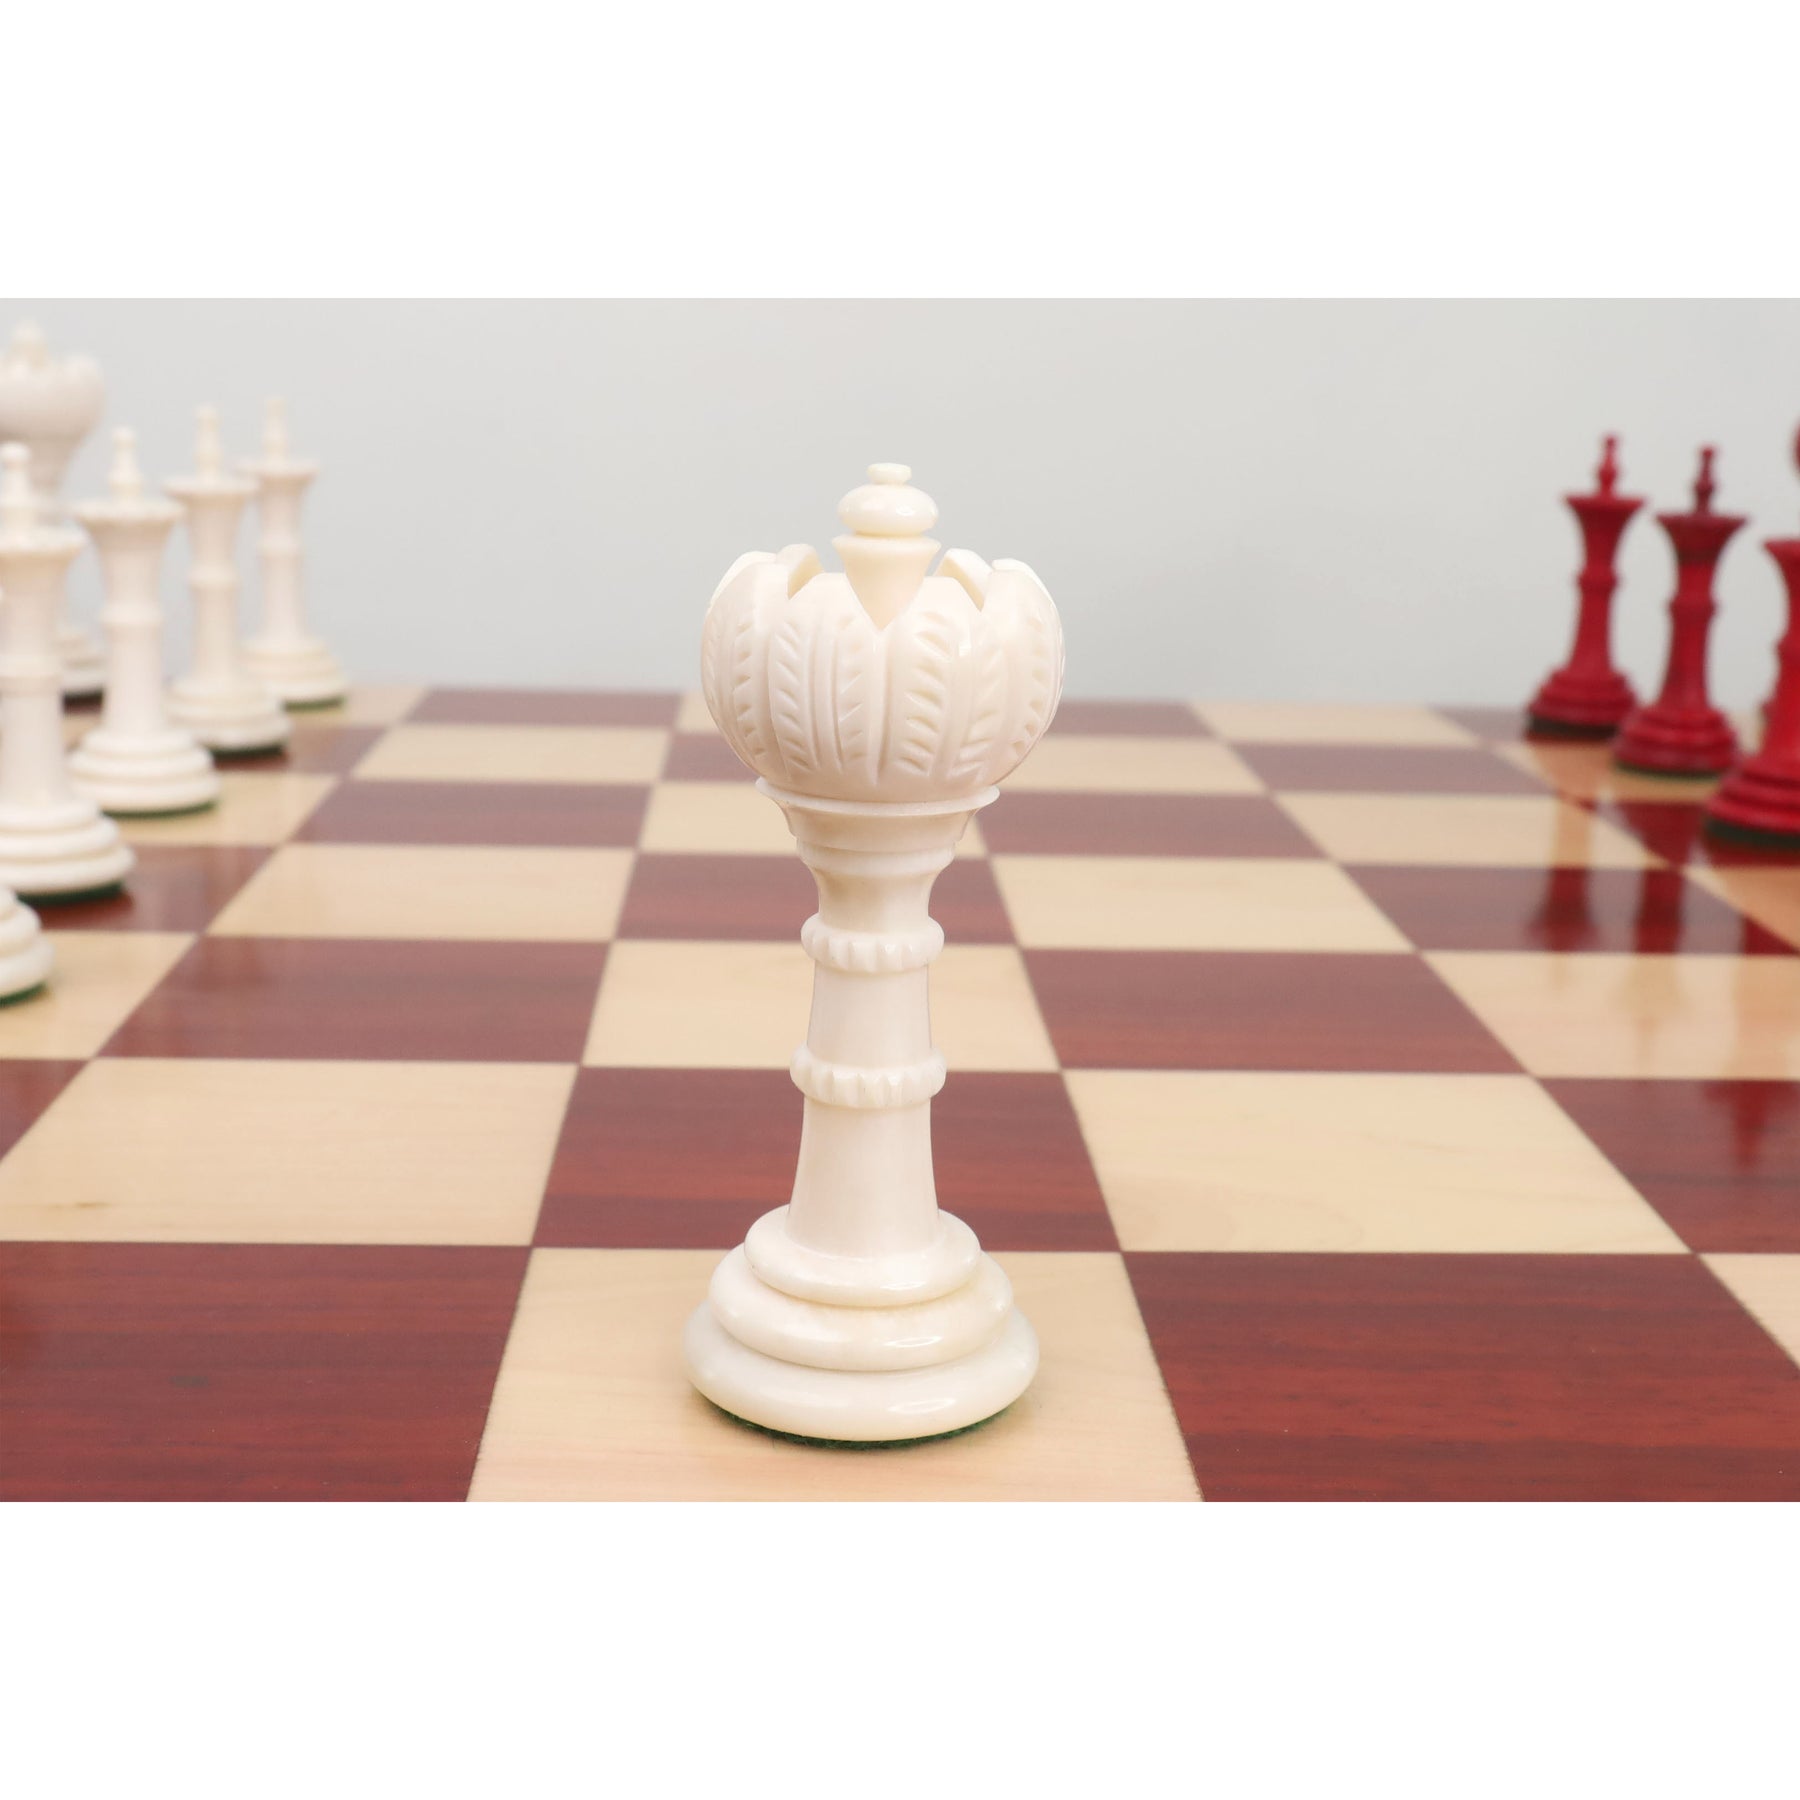 4.6″ Antique Pre-Staunton English Chess Set - Camel Bone- Ivory White